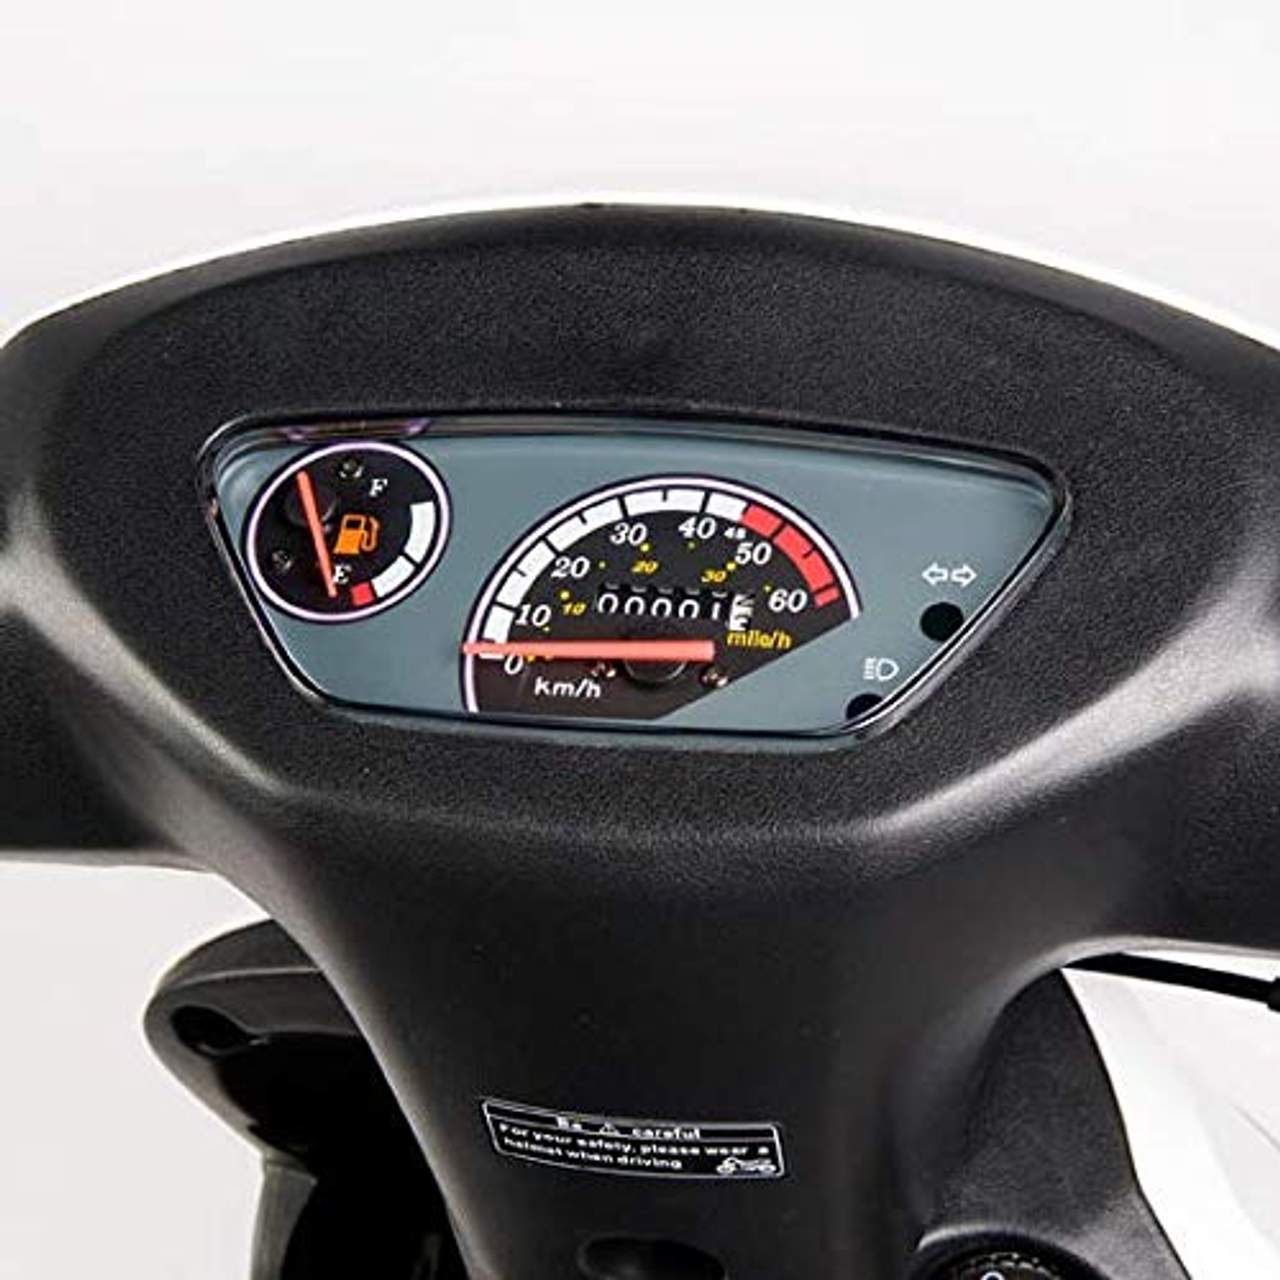 Motorroller GMX 460 Sport 45 km/h braun matt